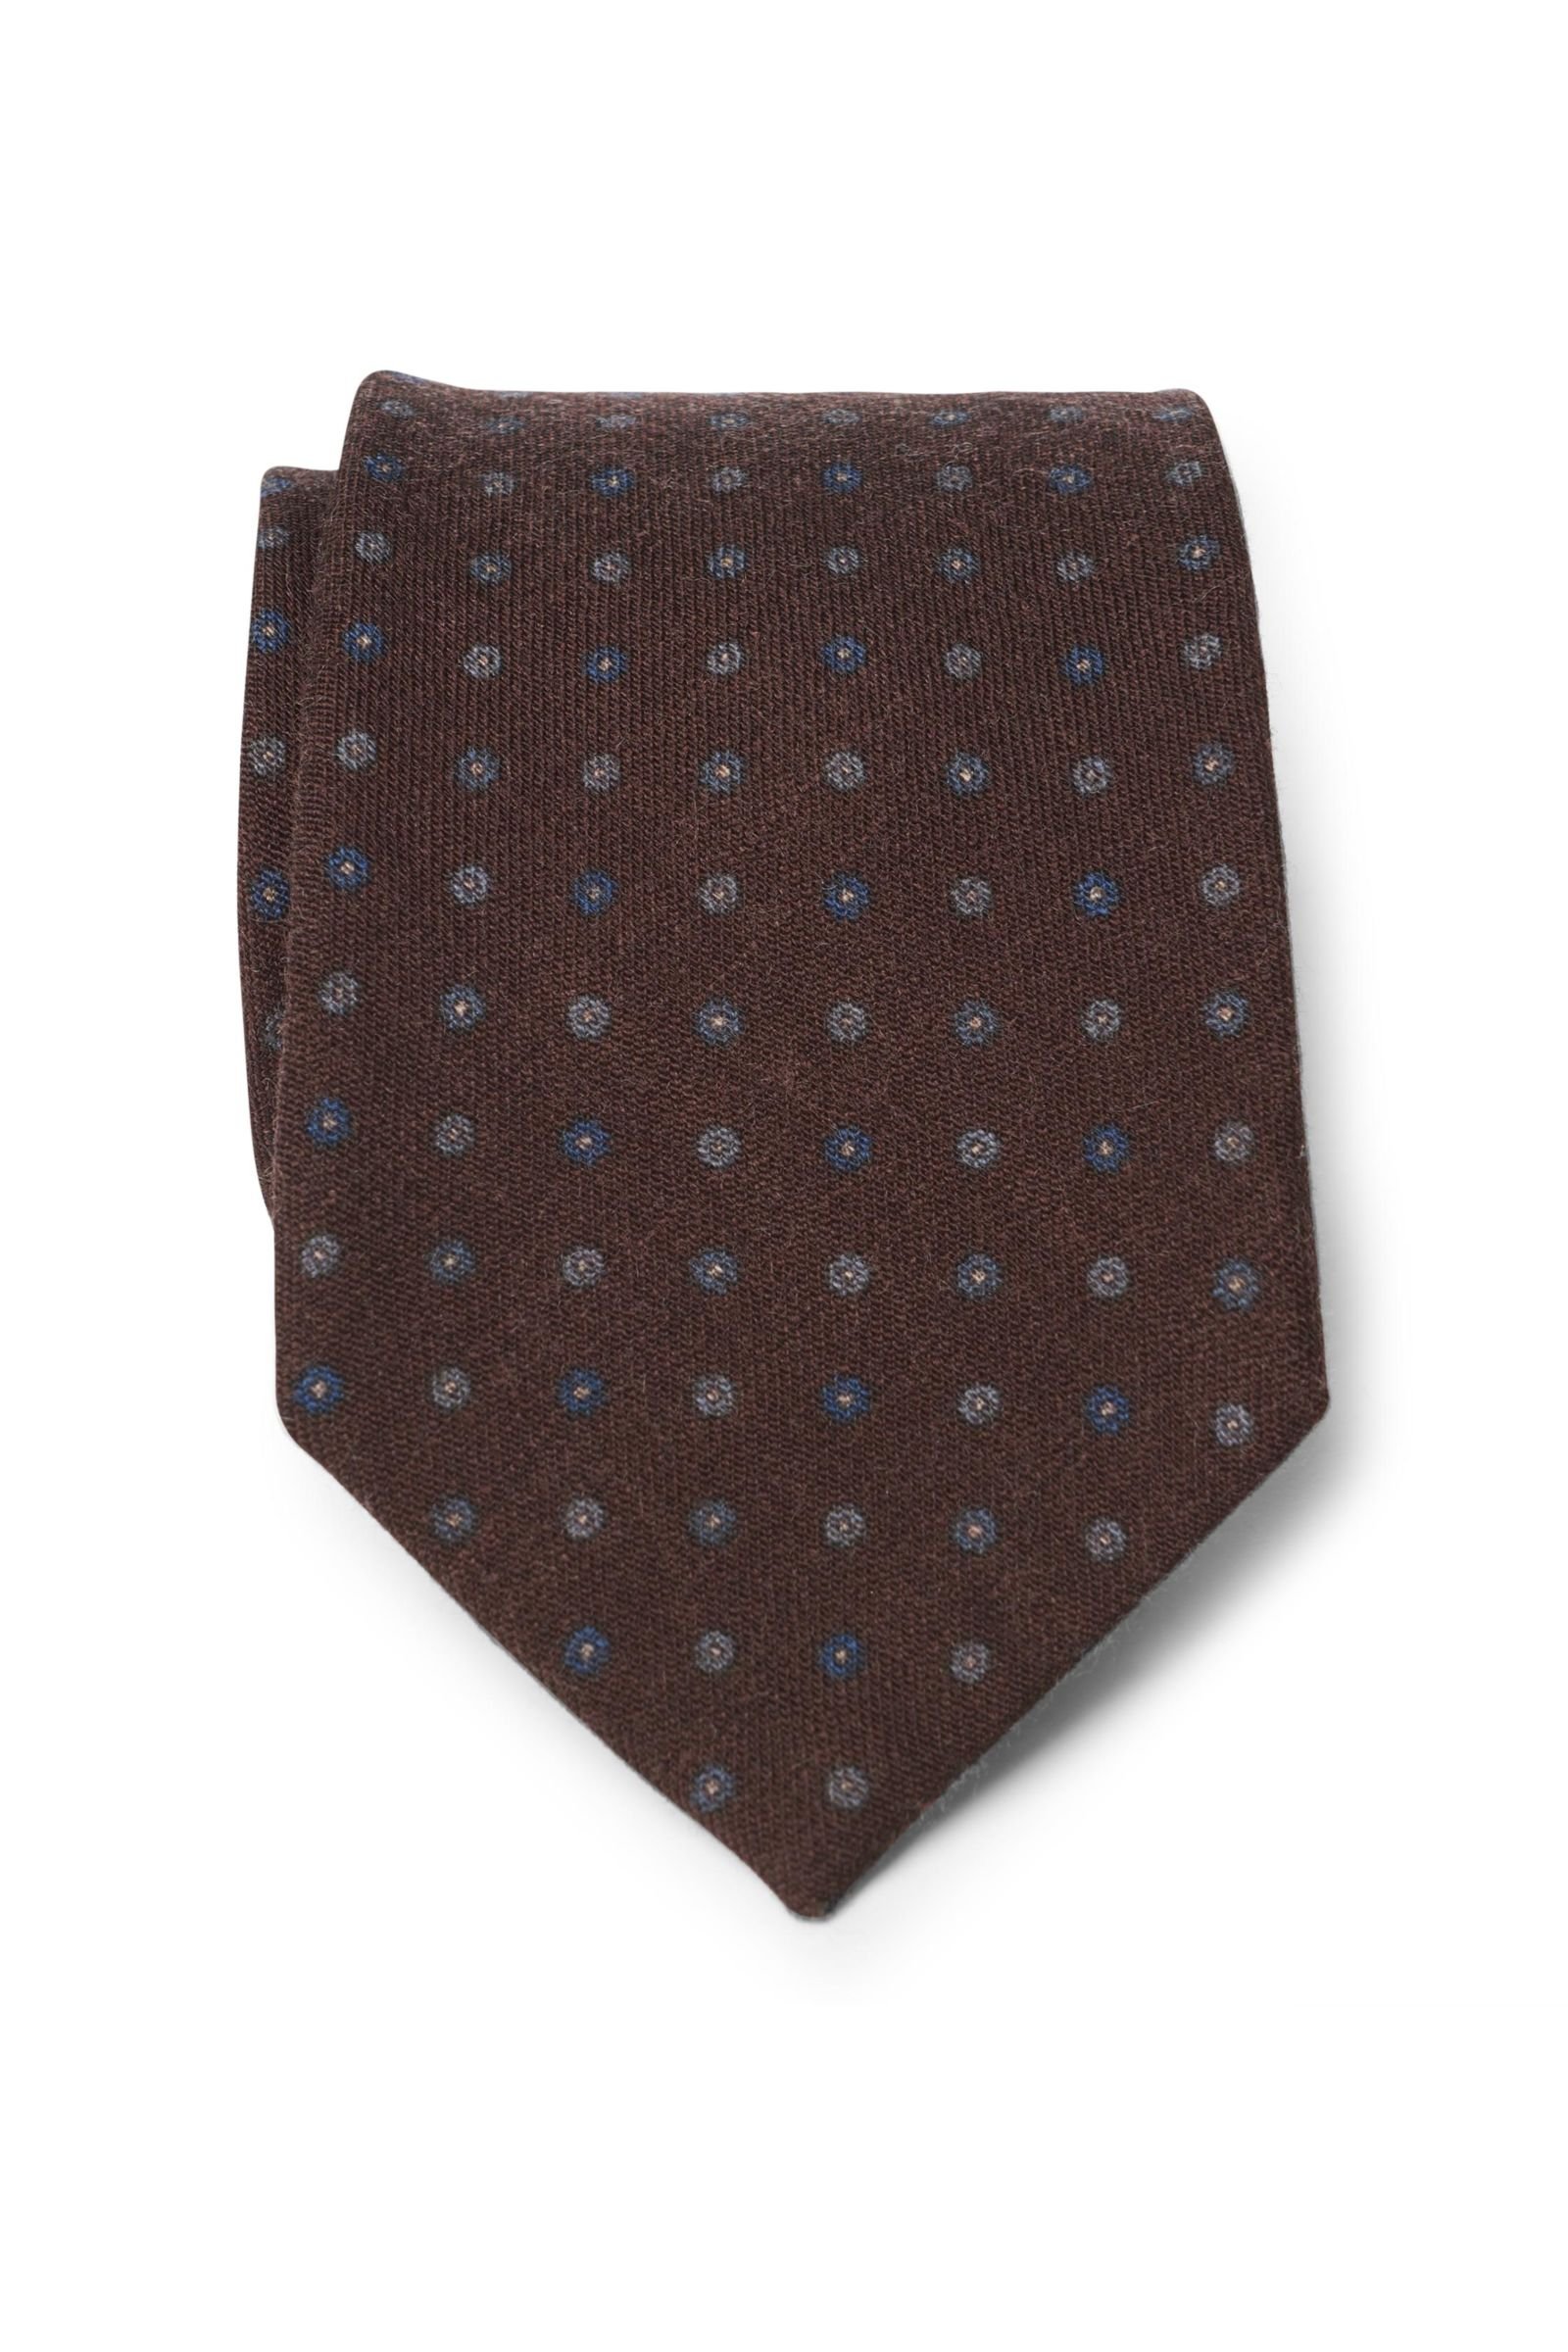 Wool tie dark brown patterned